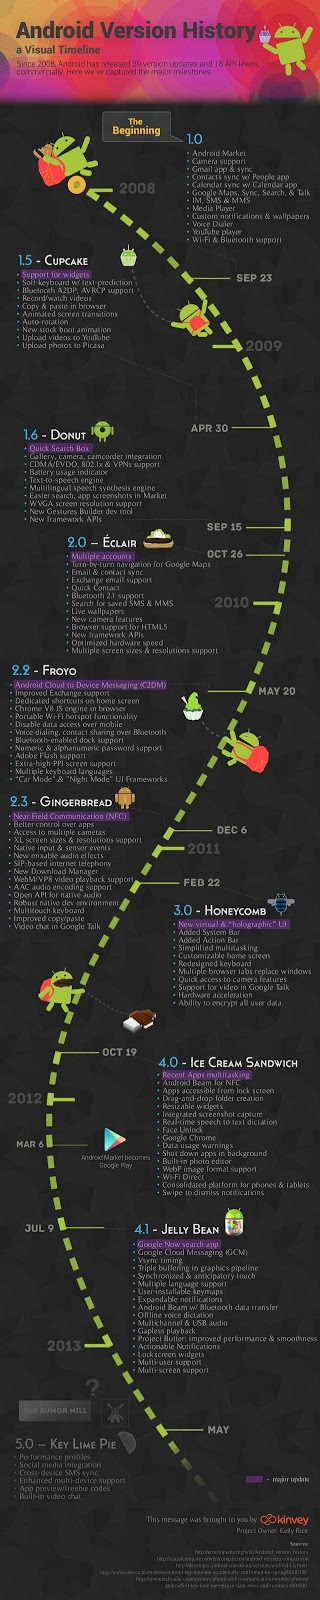 Μια αναδρομή στην εξέλιξη του Android! [Infographic] - Φωτογραφία 2